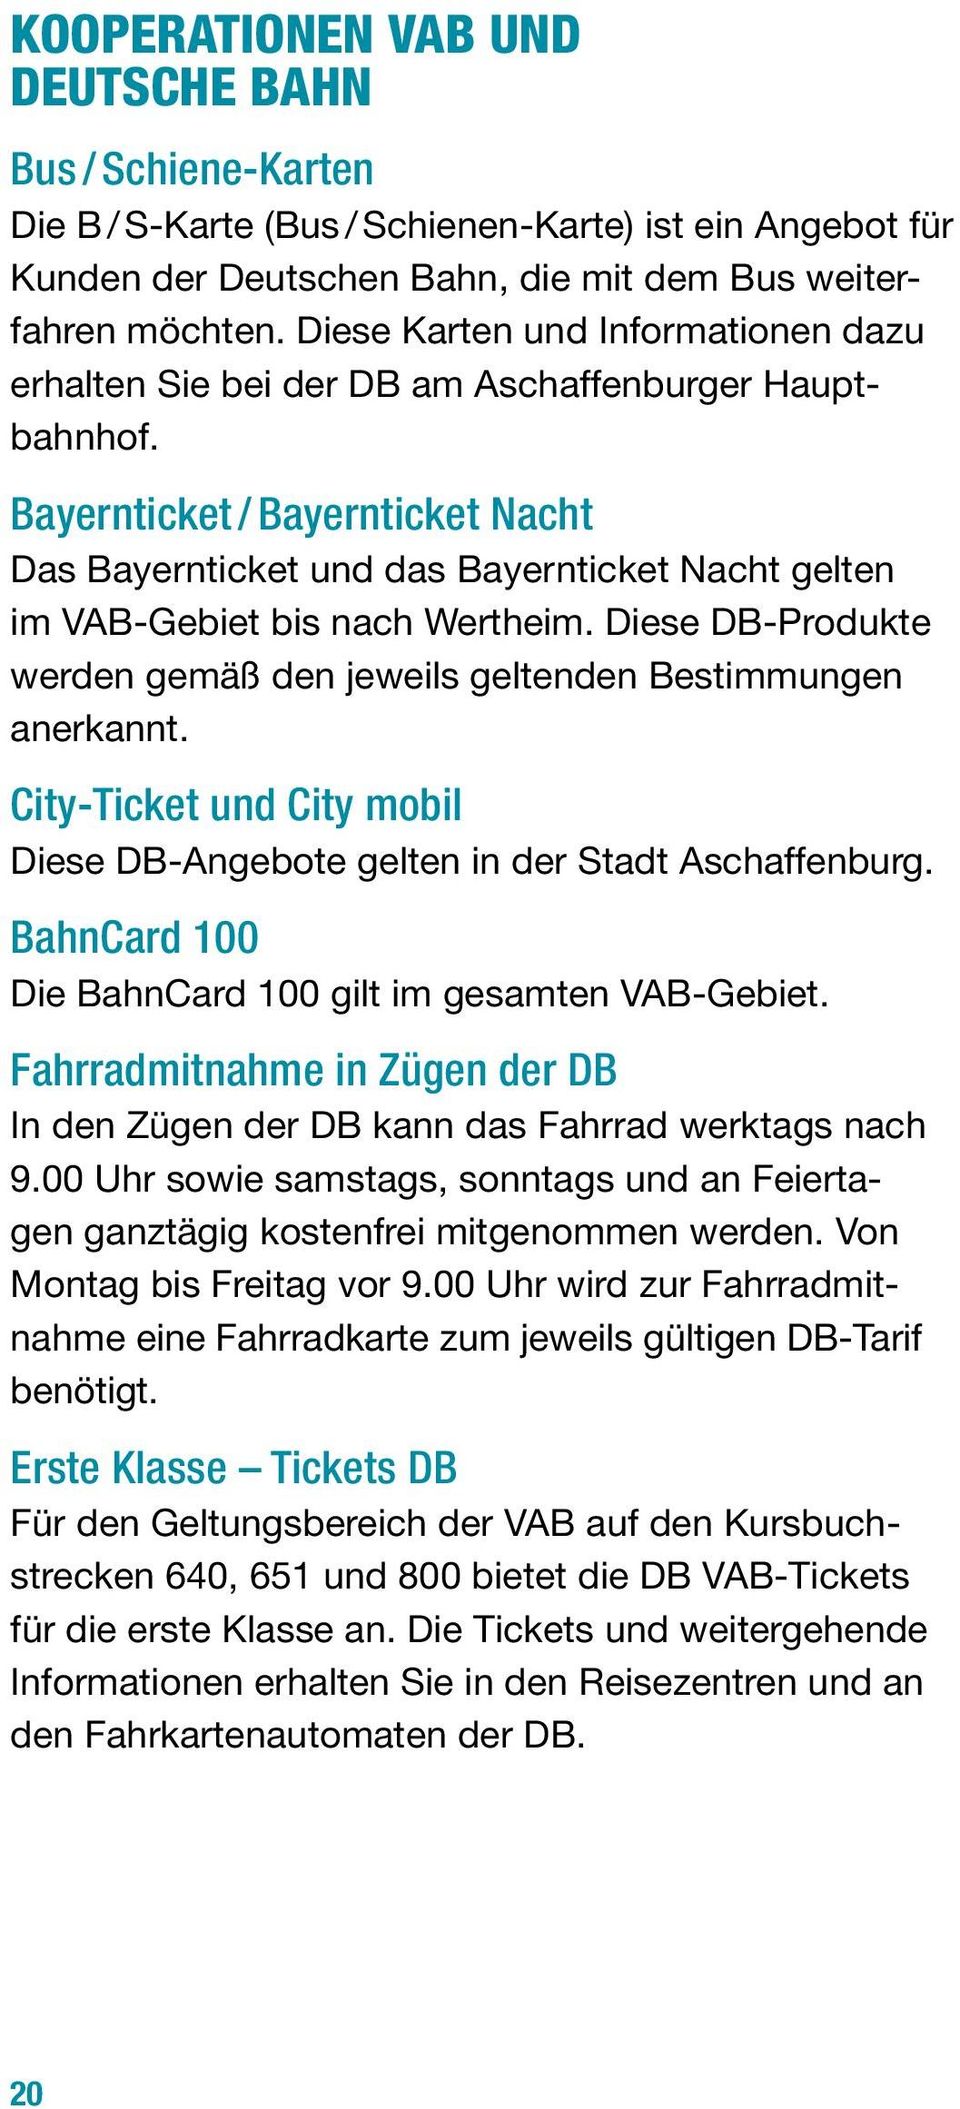 Bayernticket / Bayernticket Nacht Das Bayernticket und das Bayernticket Nacht gelten im VAB-Gebiet bis nach Wertheim. Diese DB-Produkte werden gemäß den jeweils geltenden Bestimmungen anerkannt.